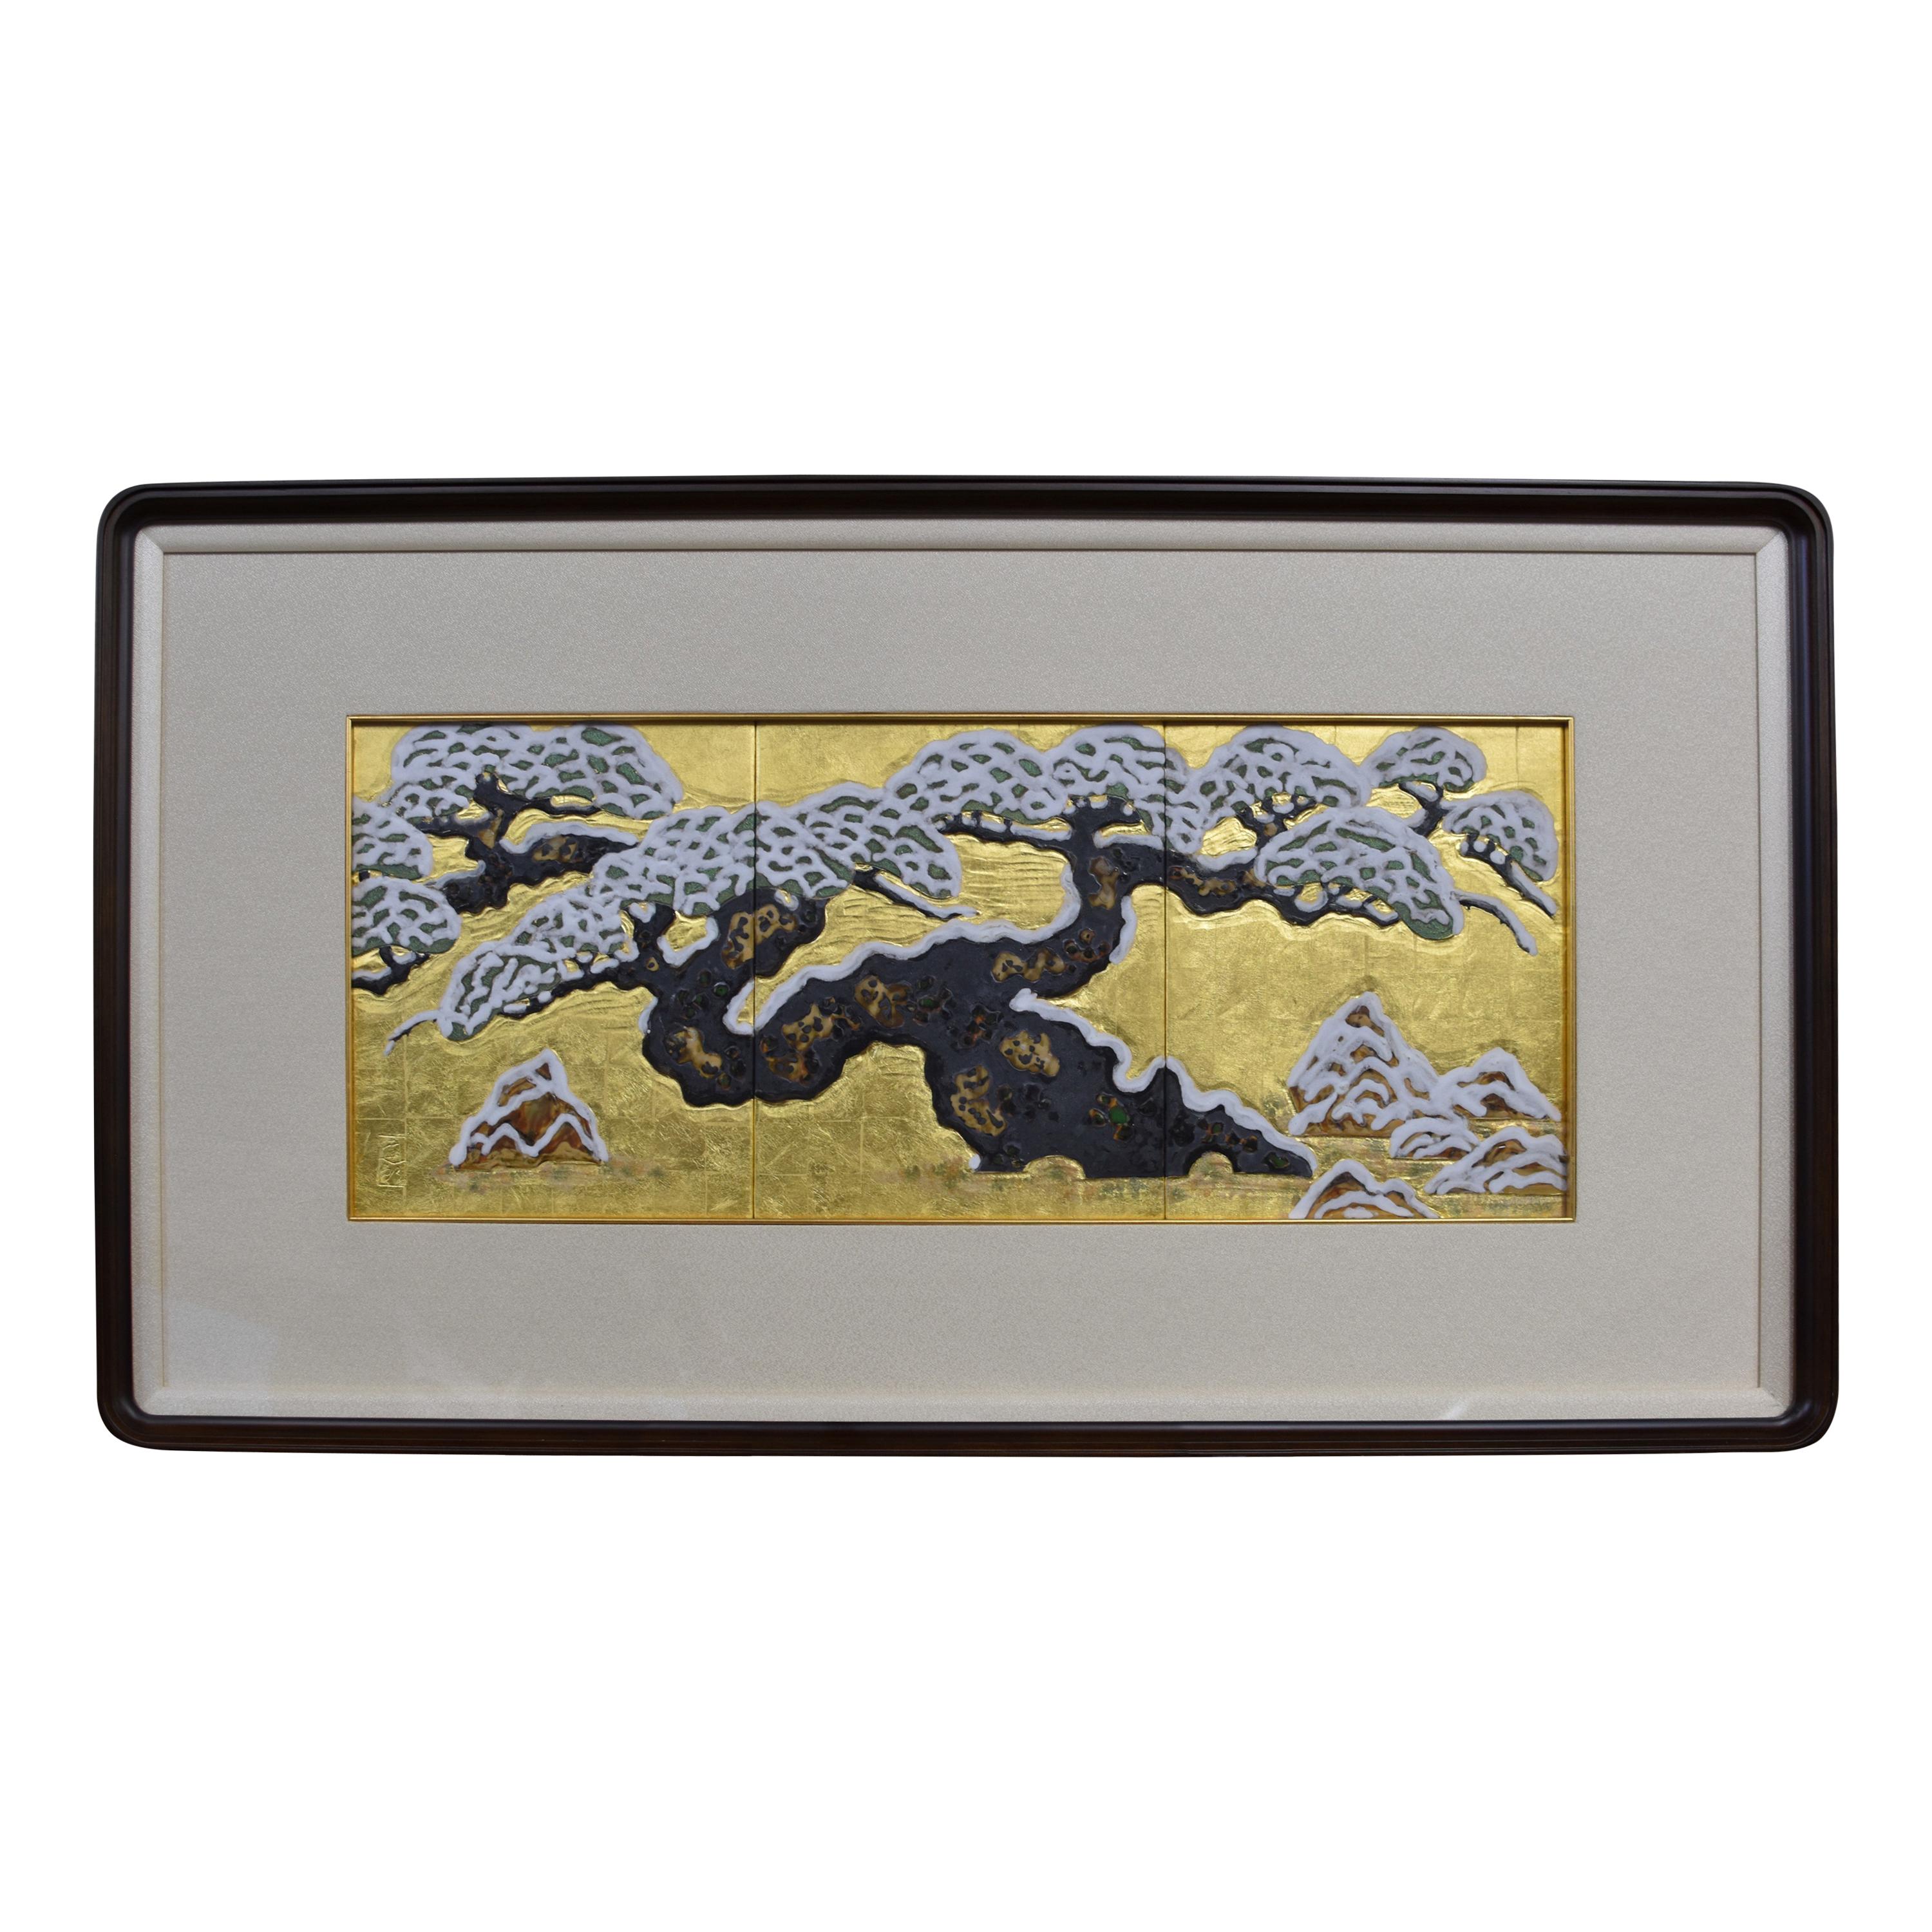 Handbemalte, gerahmte japanische Porzellantafel mit Blattgold von Meisterkünstler